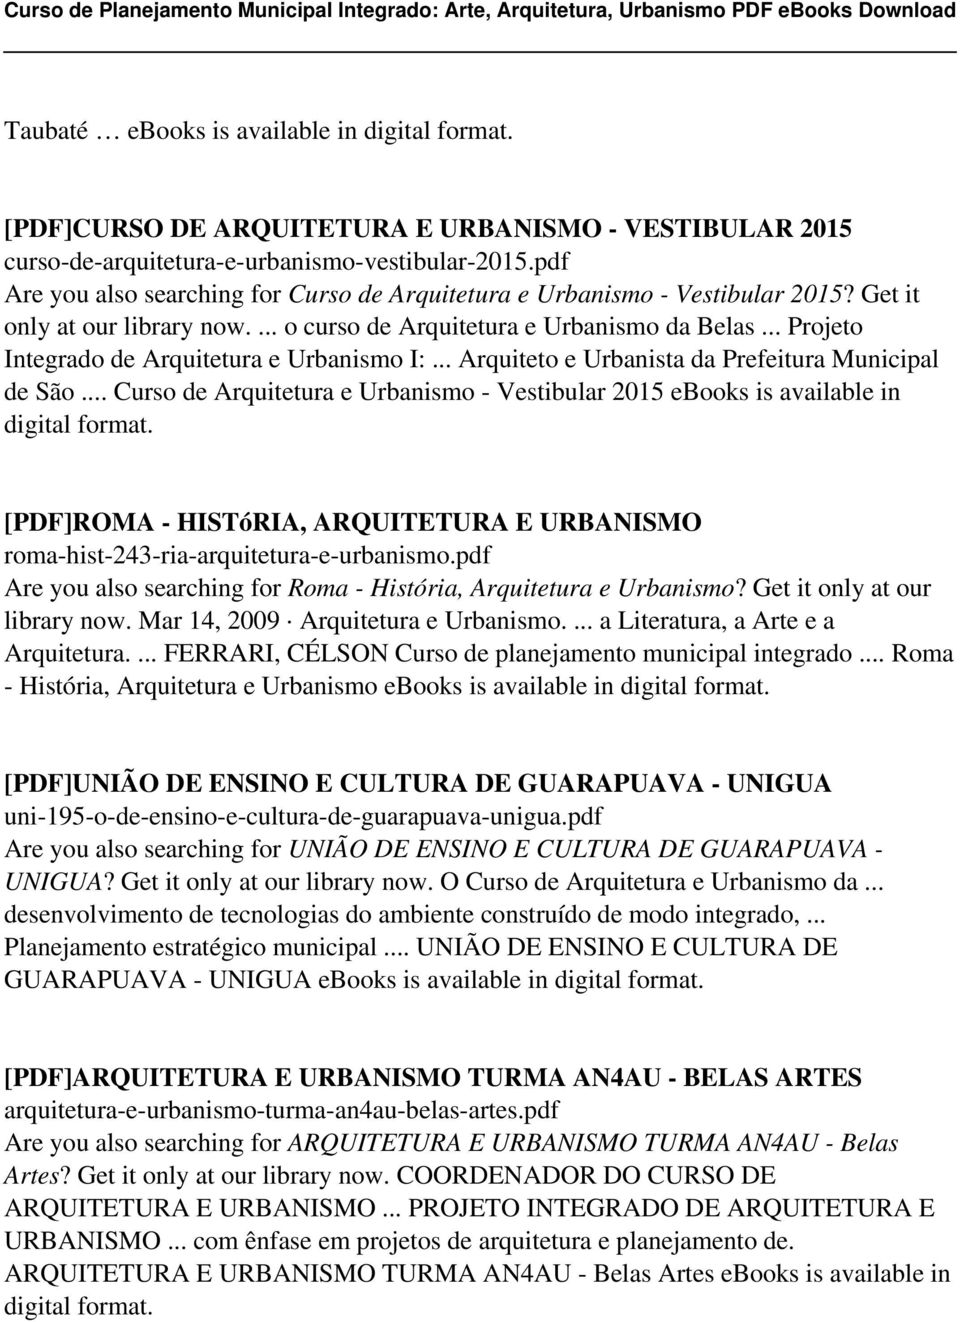 .. Projeto Integrado de Arquitetura e Urbanismo I:... Arquiteto e Urbanista da Prefeitura Municipal de São... Curso de Arquitetura e Urbanismo - Vestibular 2015 ebooks is available in digital format.